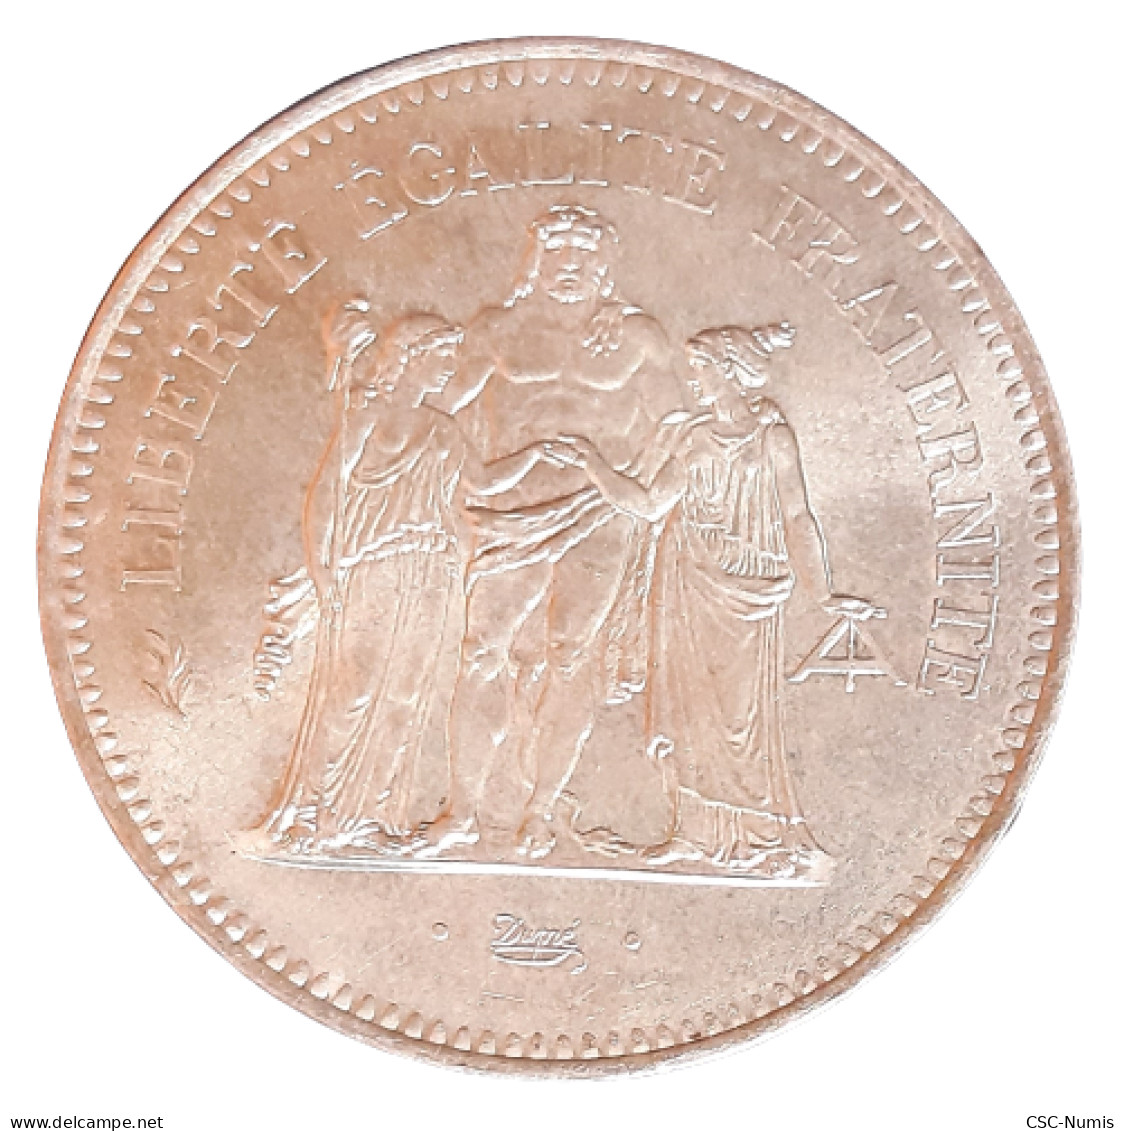 (CG#009) - 50 Francs Hercule 1978 - Argent - 50 Francs